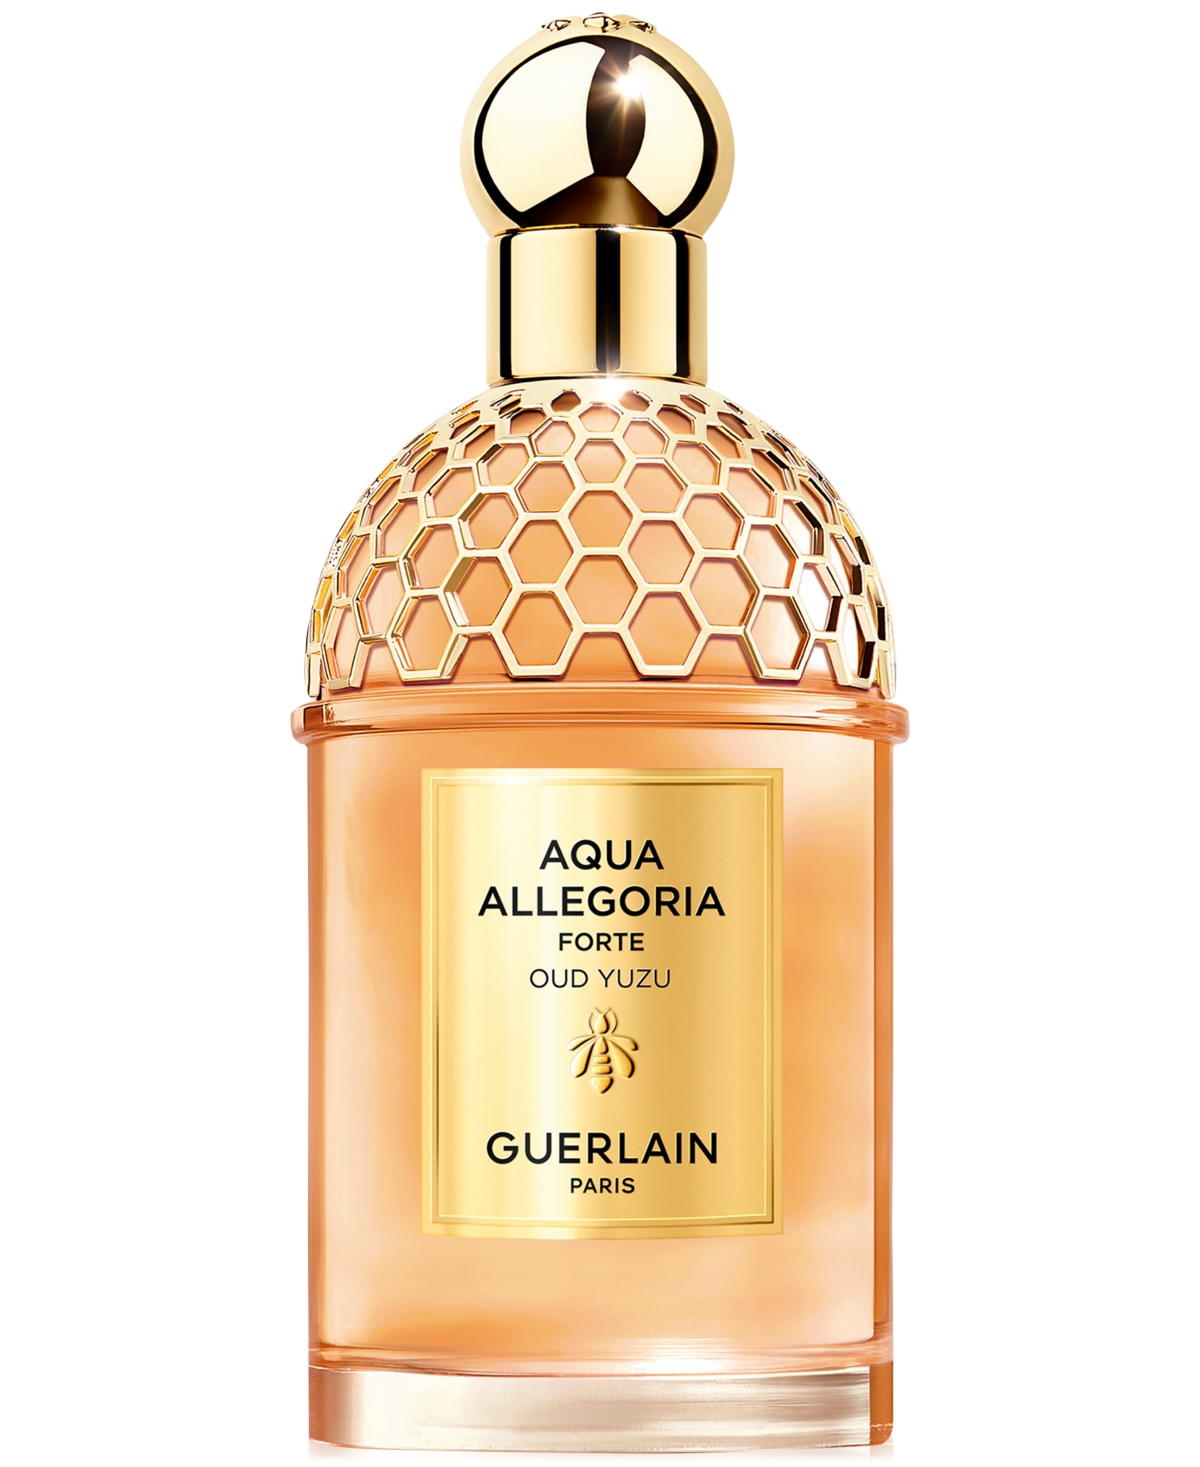 Guerlain Aqua Allegoria Forte Oud Yuzu Eau De Parfum, 4.2 Oz.